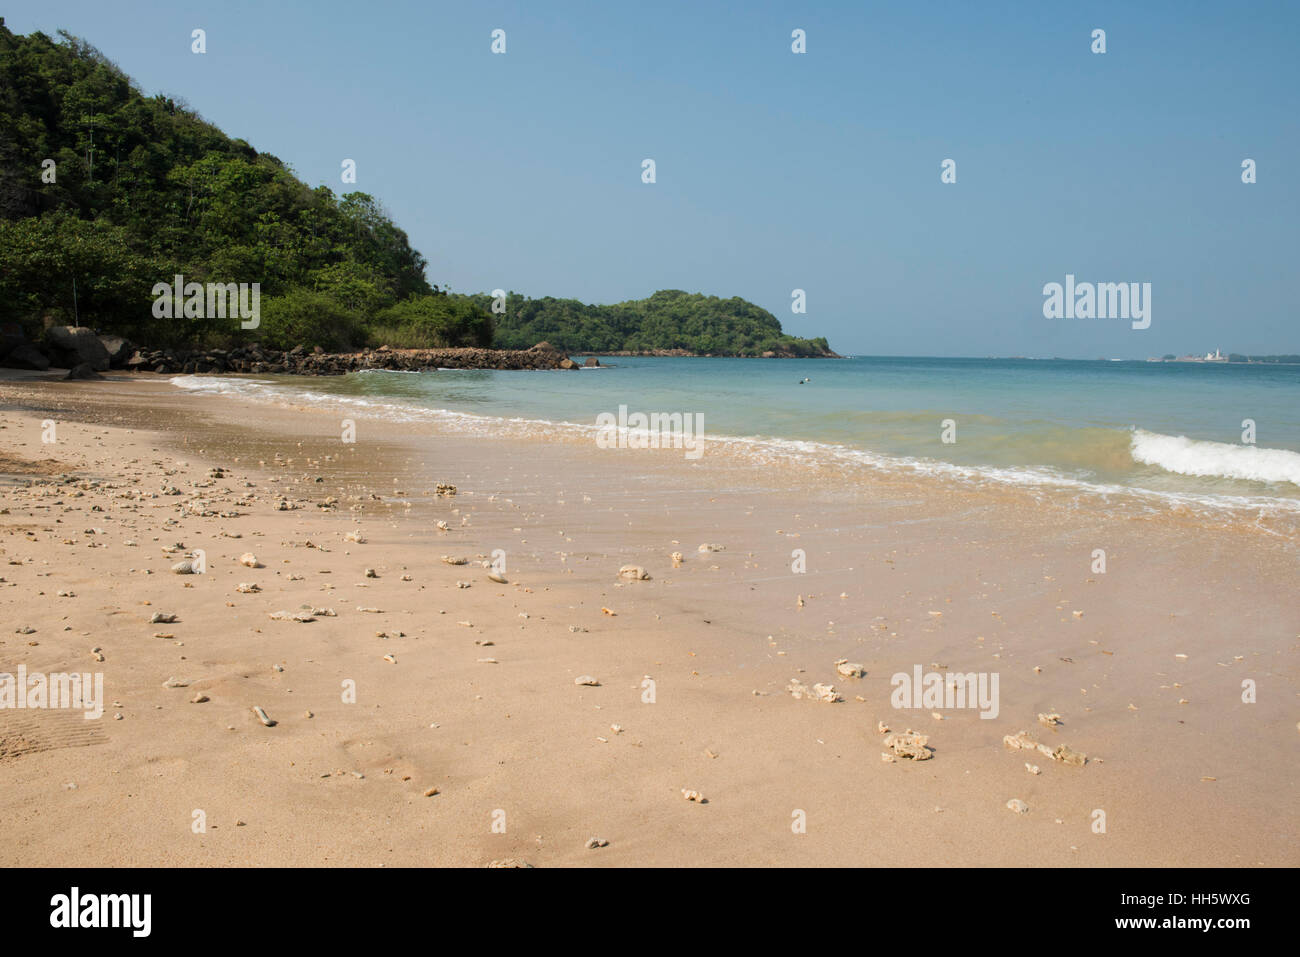 Jungle beach, Unawatuna, Sri Lanka Stock Photo